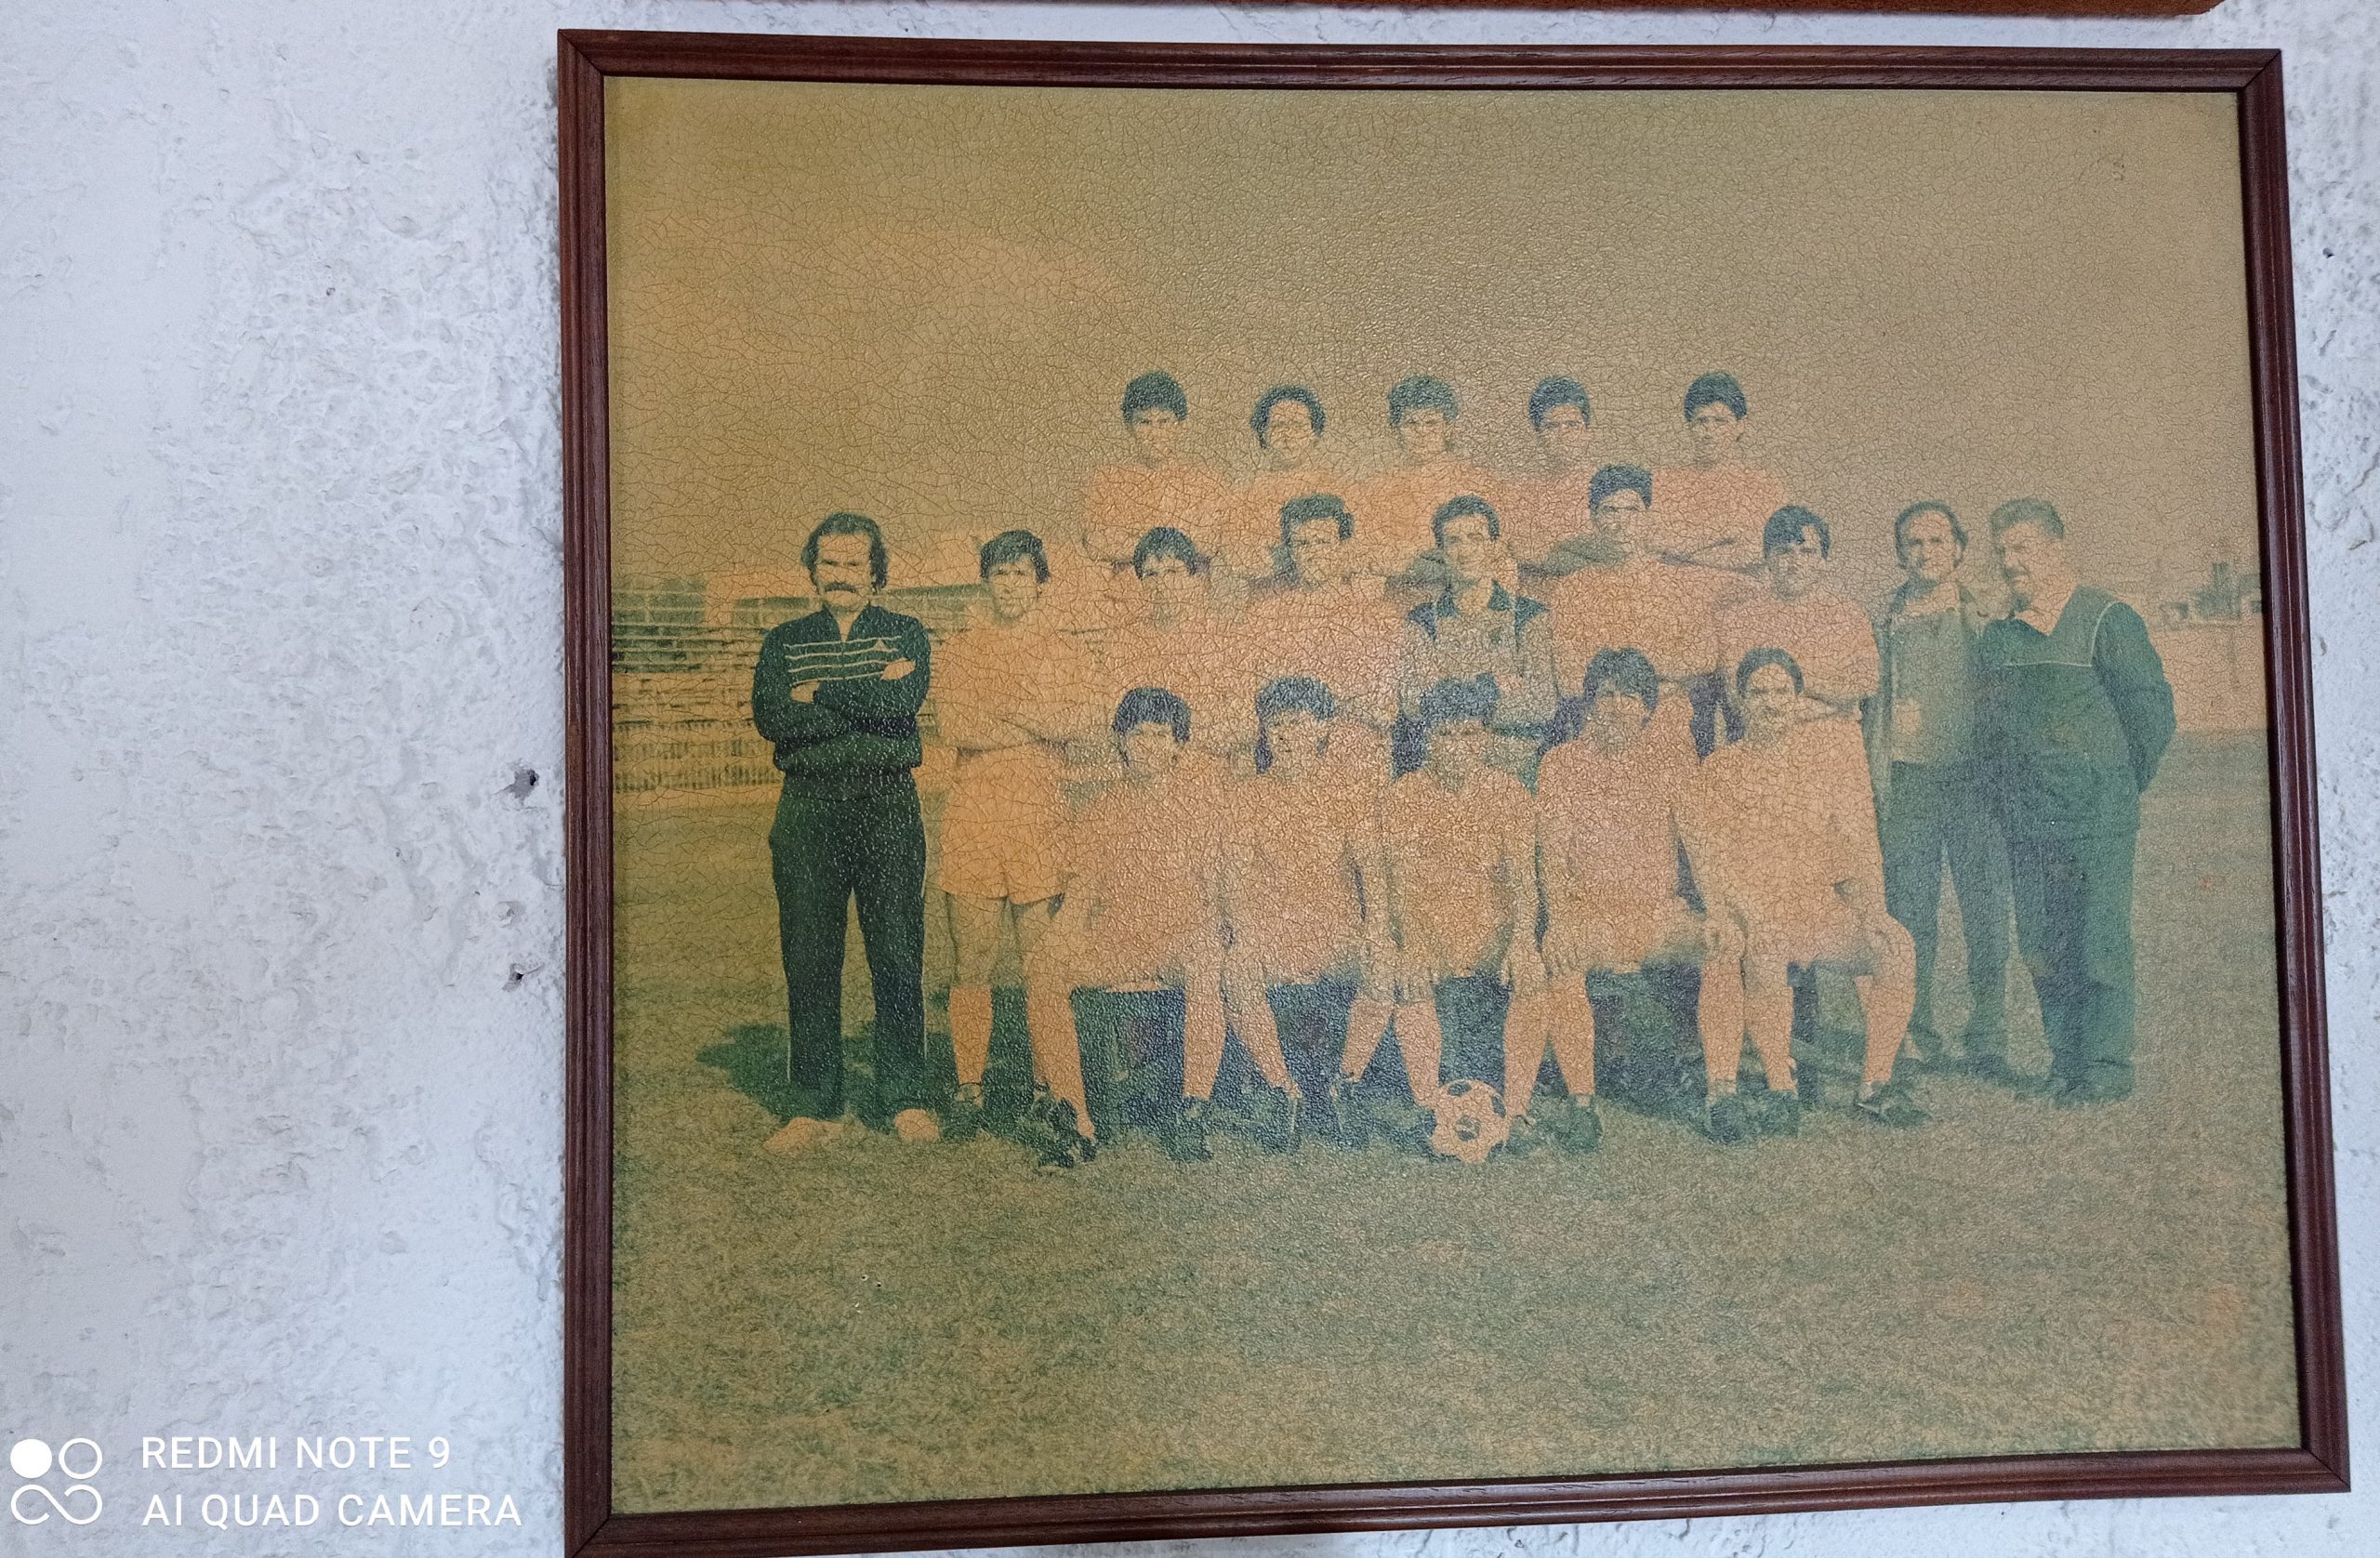 Αναμνηστική φωτογραφία του Άγιαξ Ταύρου στο γήπεδο του Φωστήρα Πηγή: kedenews.gr